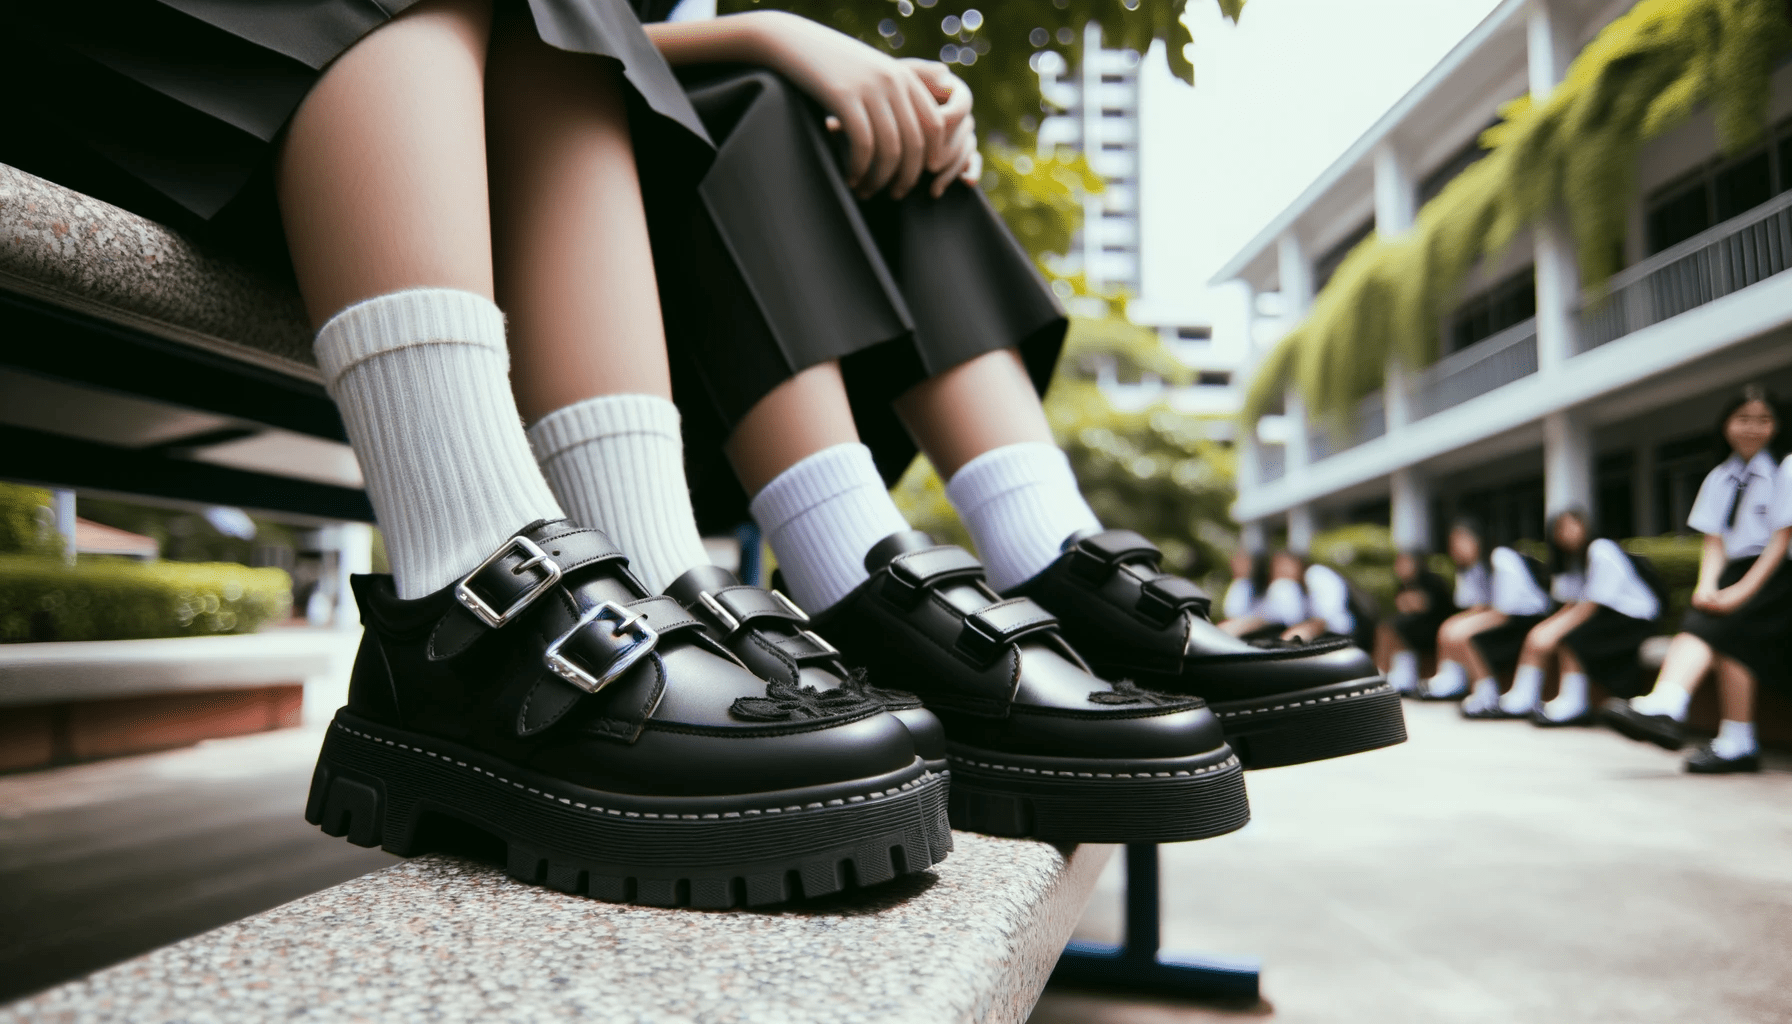 niñas con zapatos escolares asthetic con plataforma